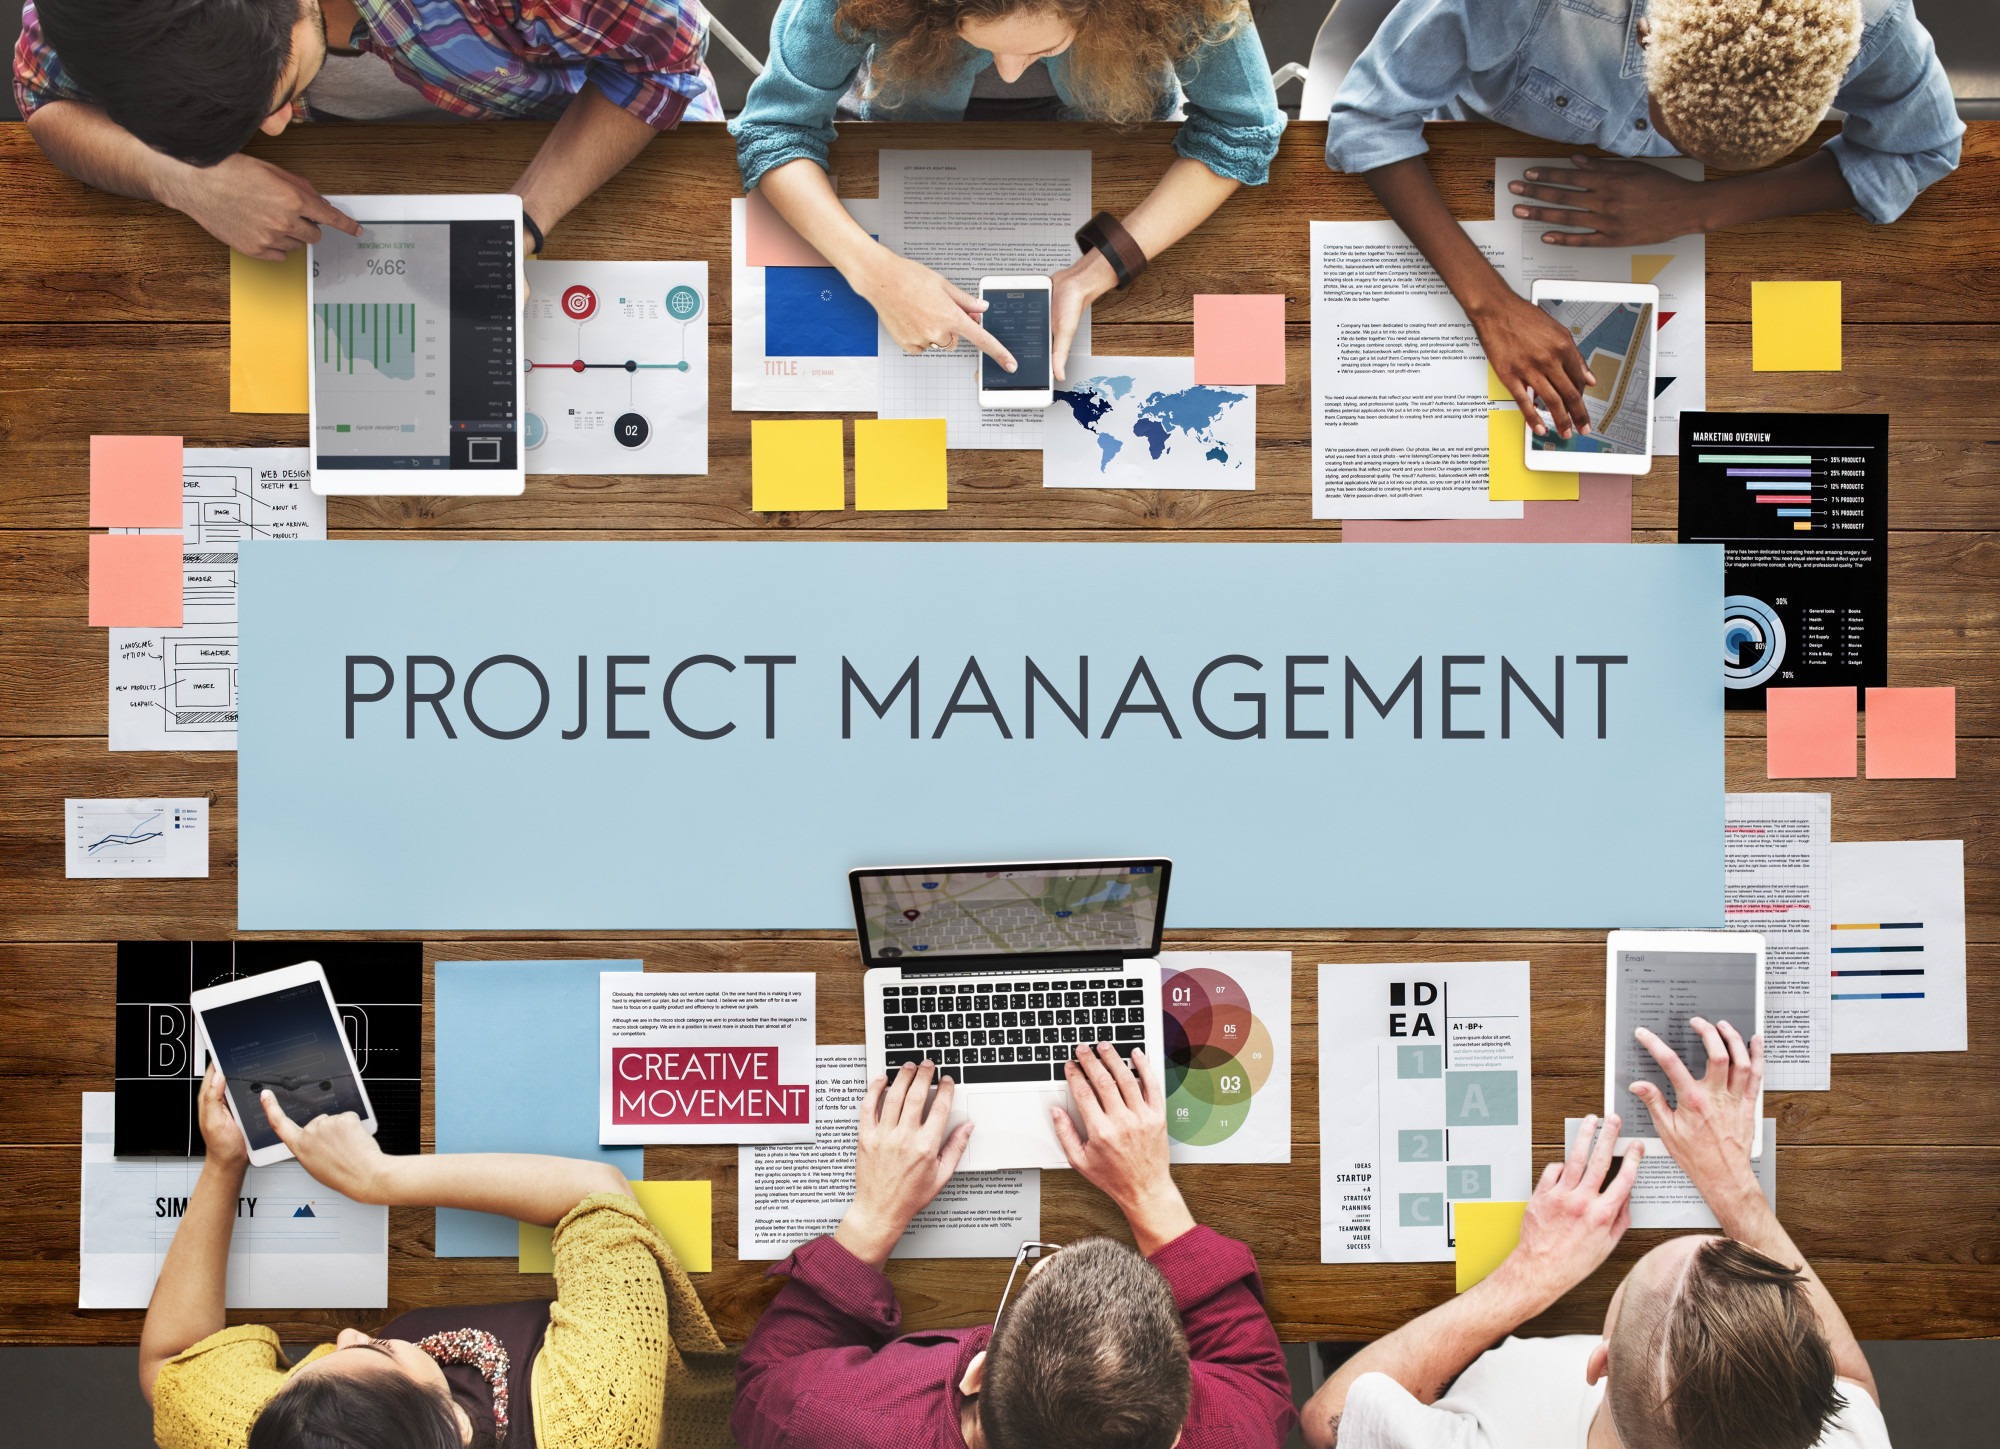 project management concepts